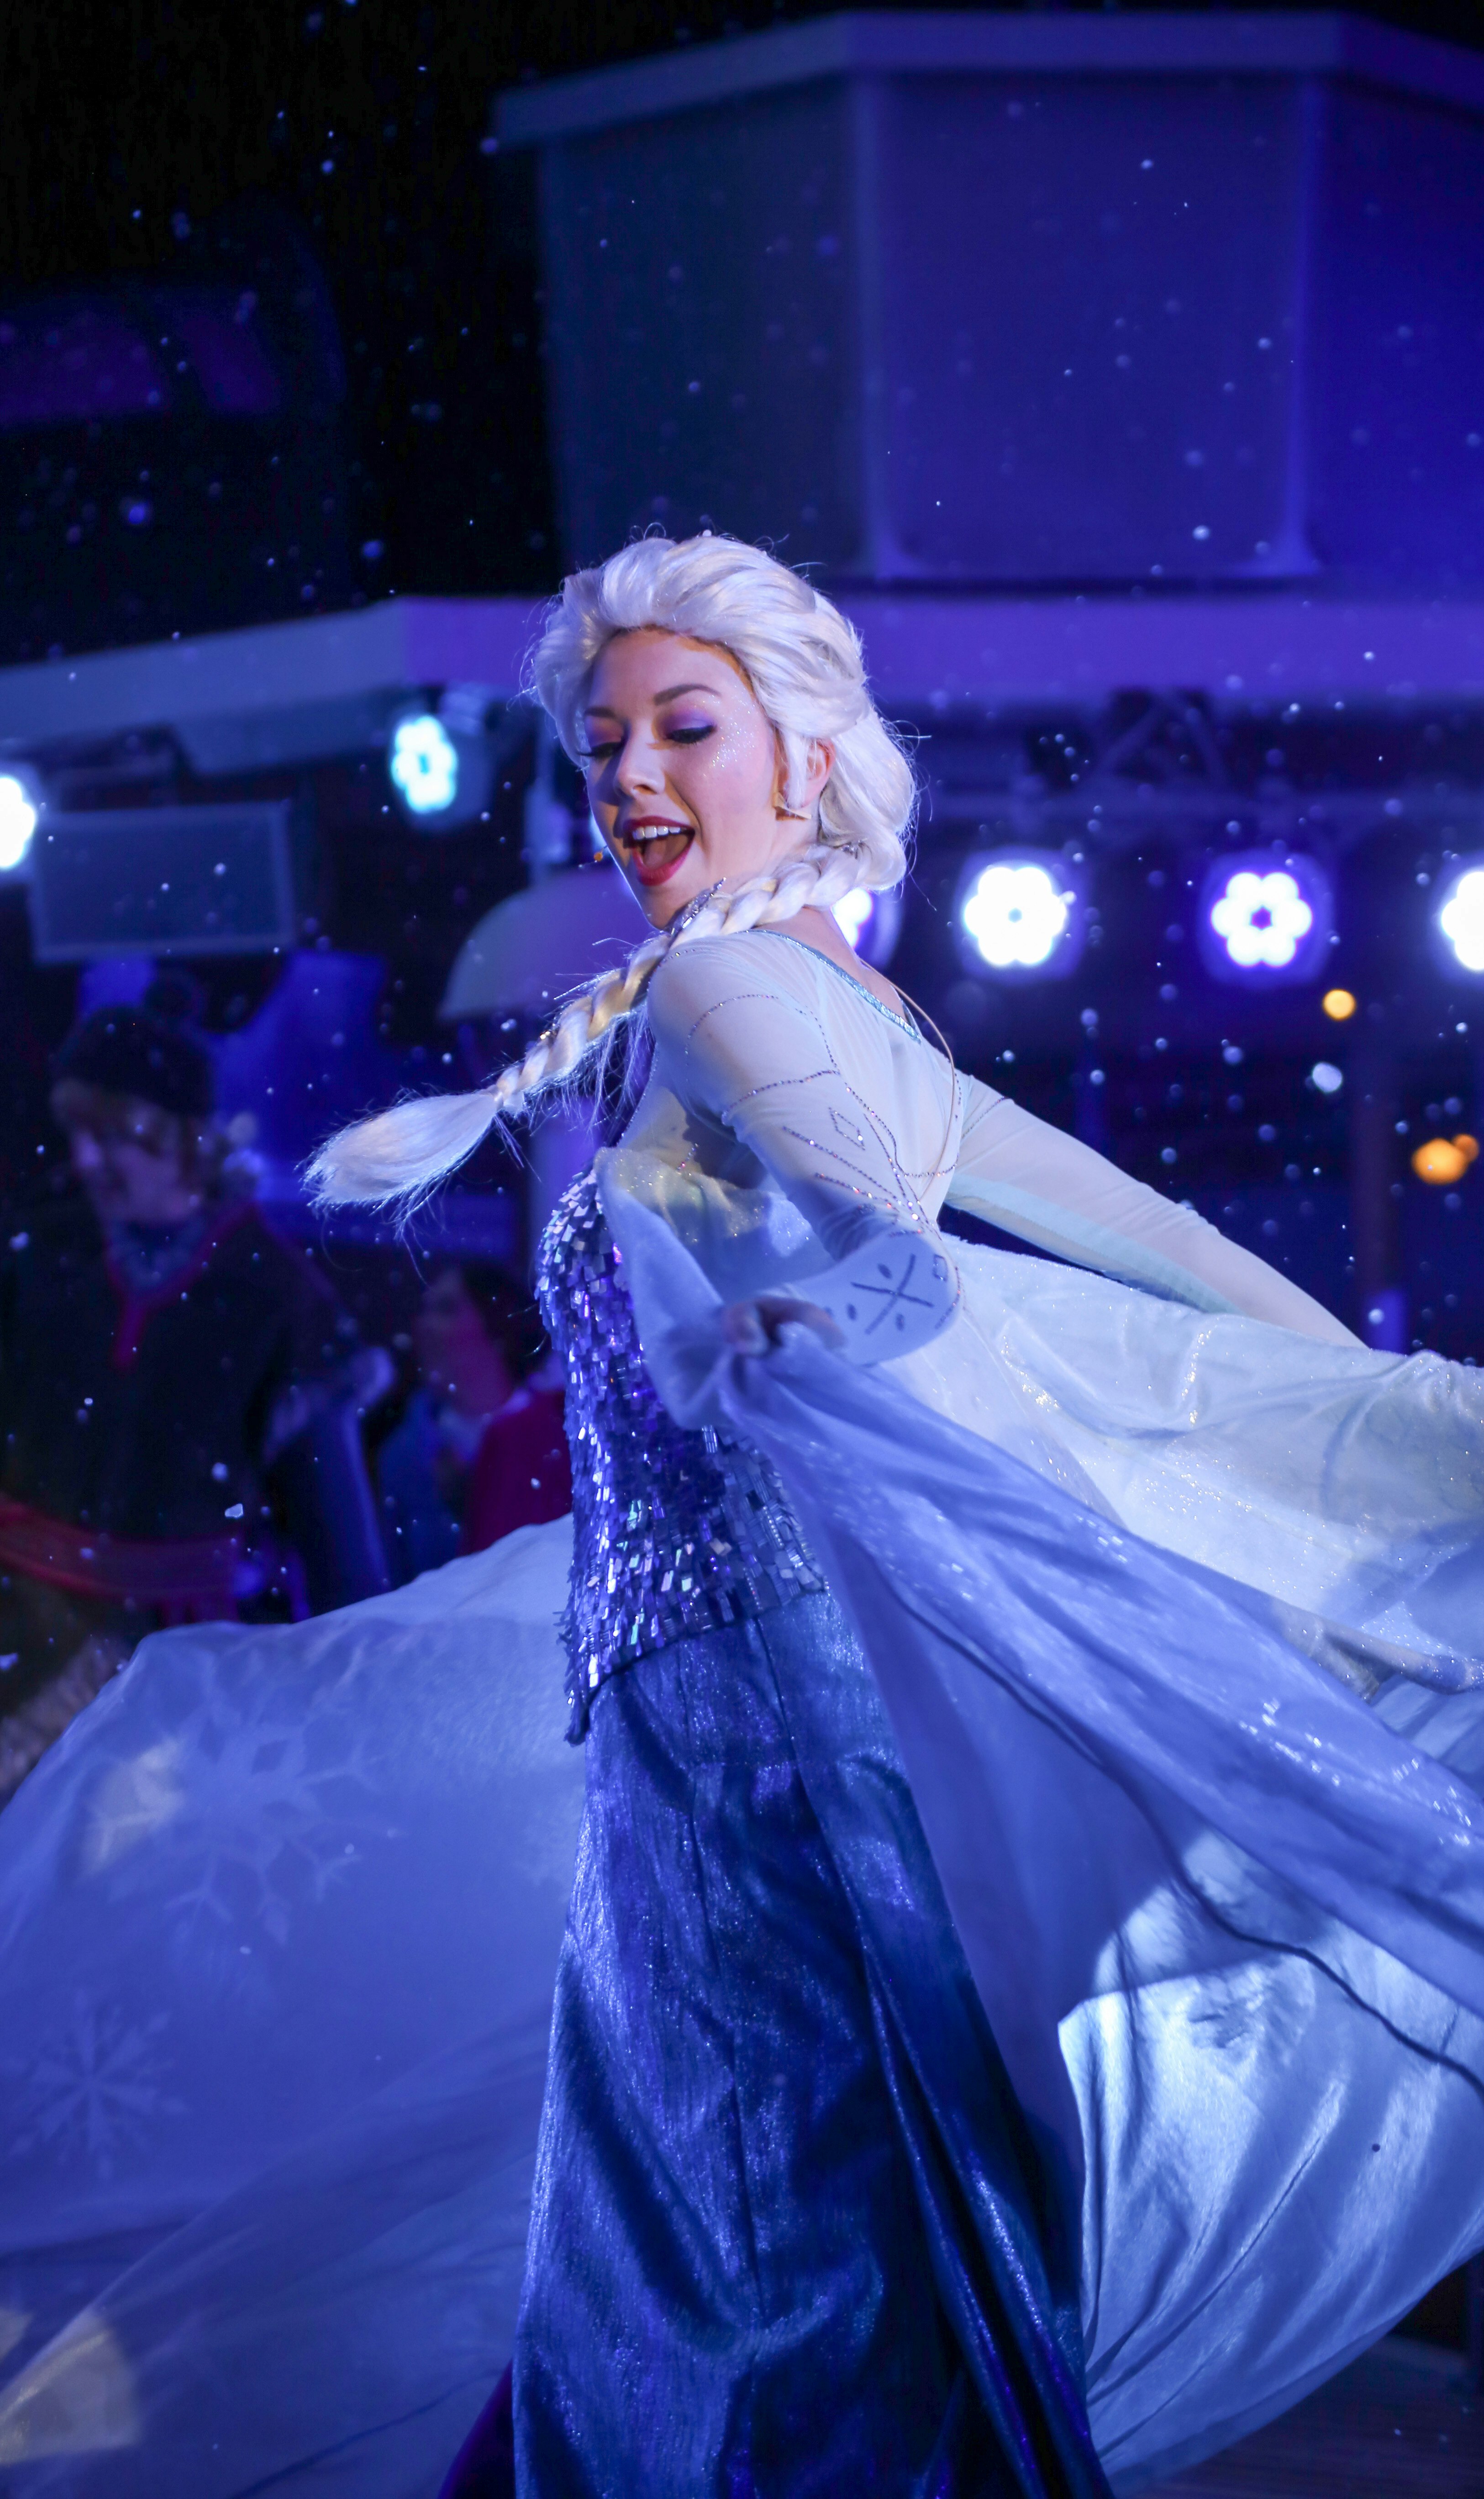 Disney Elsa from Frozen twirling in her dress